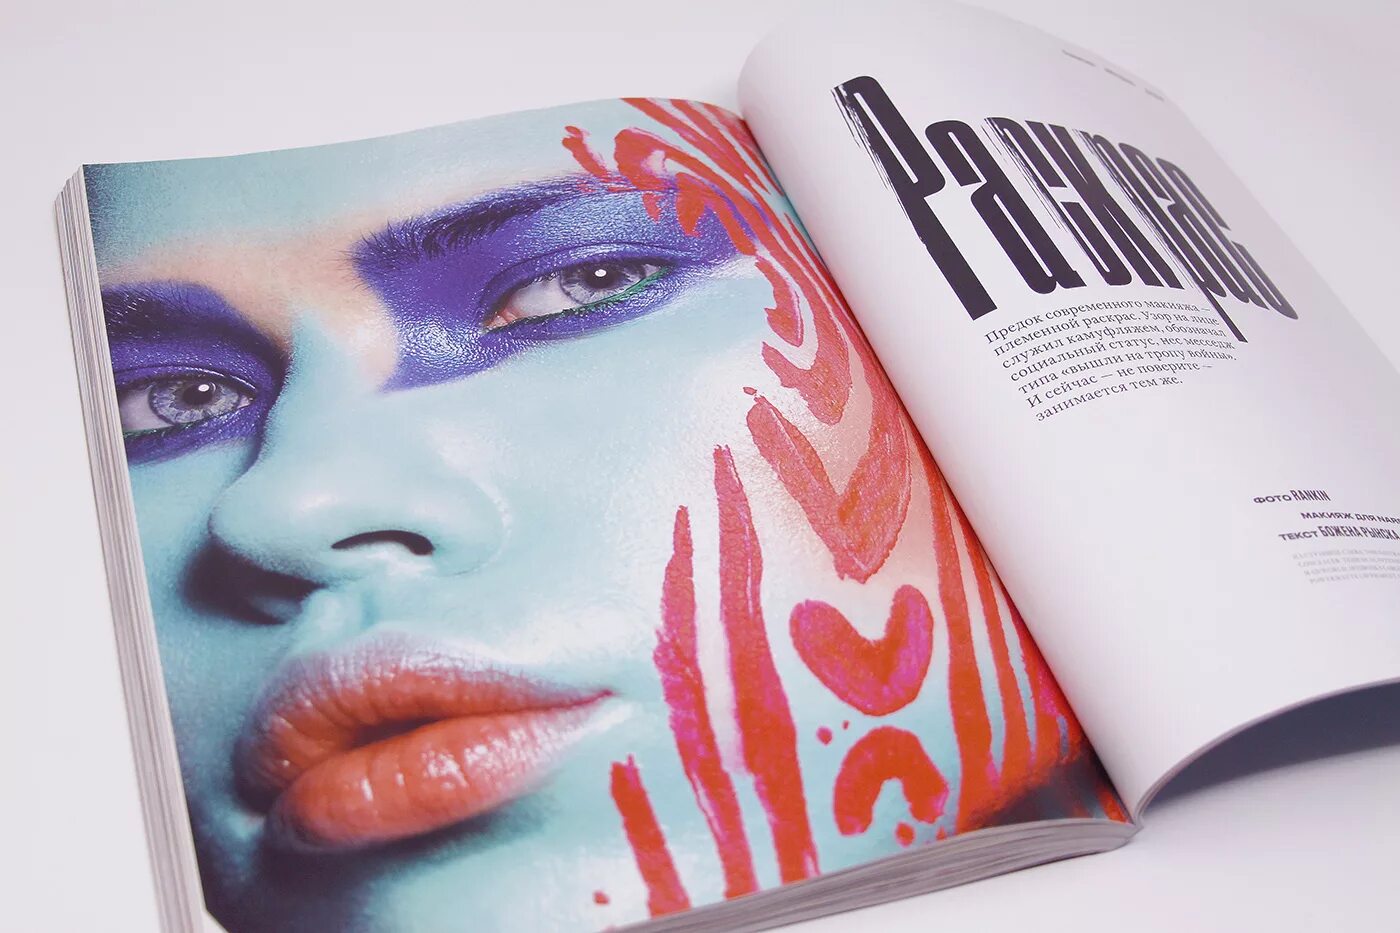 Купить magazine. Flacon журнал. Журнал косметики. Flacon Magazine логотип. Журнал о красоте флакон.